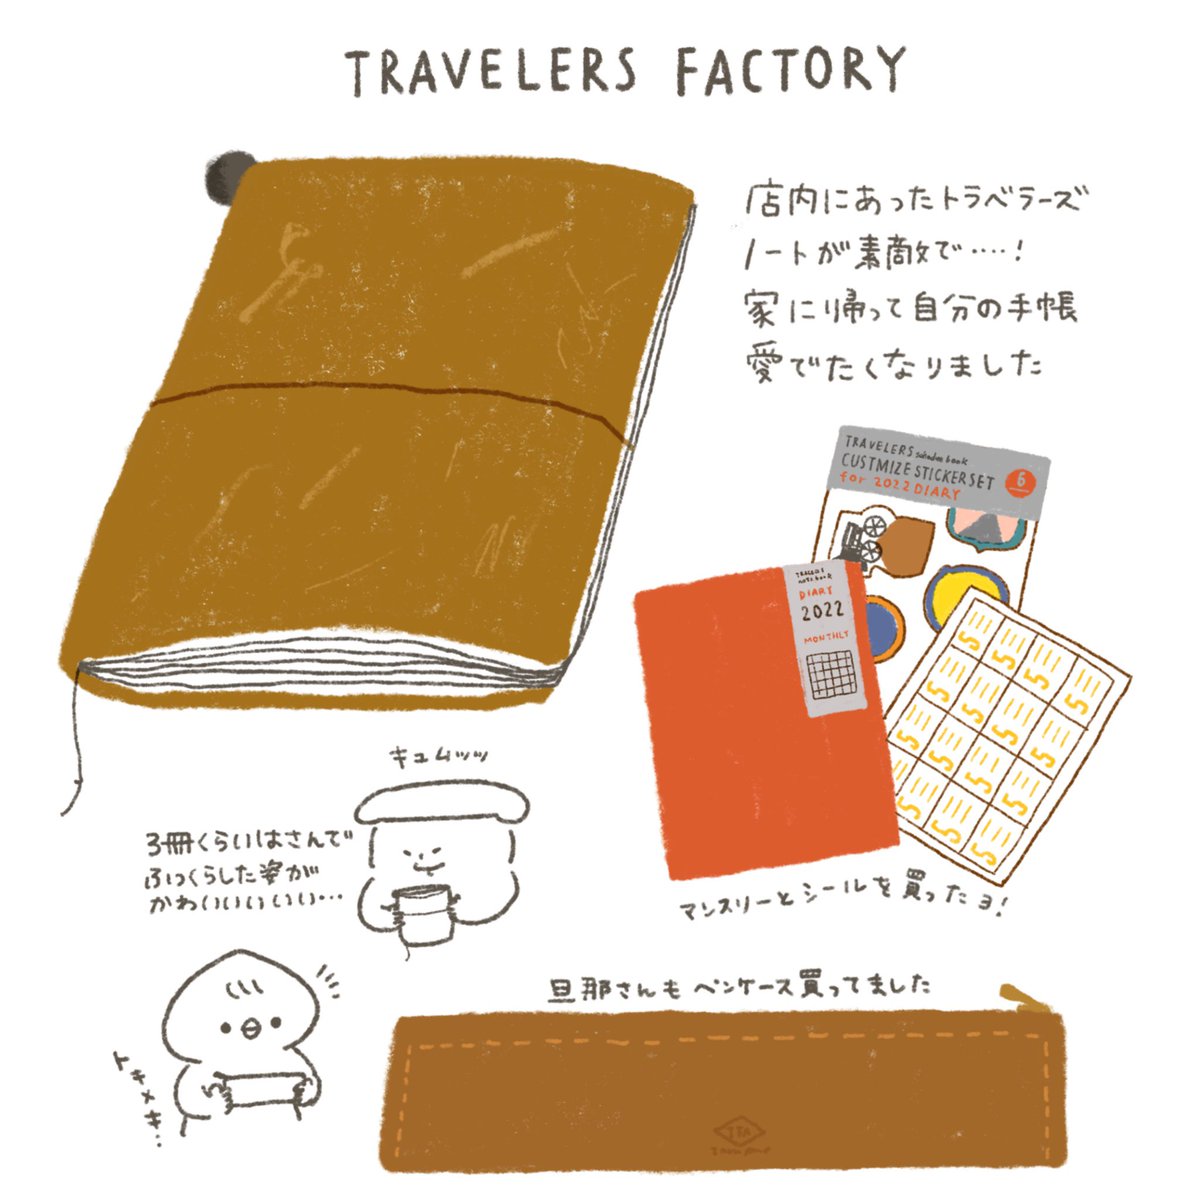 用事のついでに東京駅のトラベラーズファクトリーへ。店頭に置いてあるサンプルのノート見たり、カスタマイズする小物もたくさんで相変わらずわくわくする…◯これとお財布だけ持って色々出かけてたいな〜
#イラスト #絵日記 